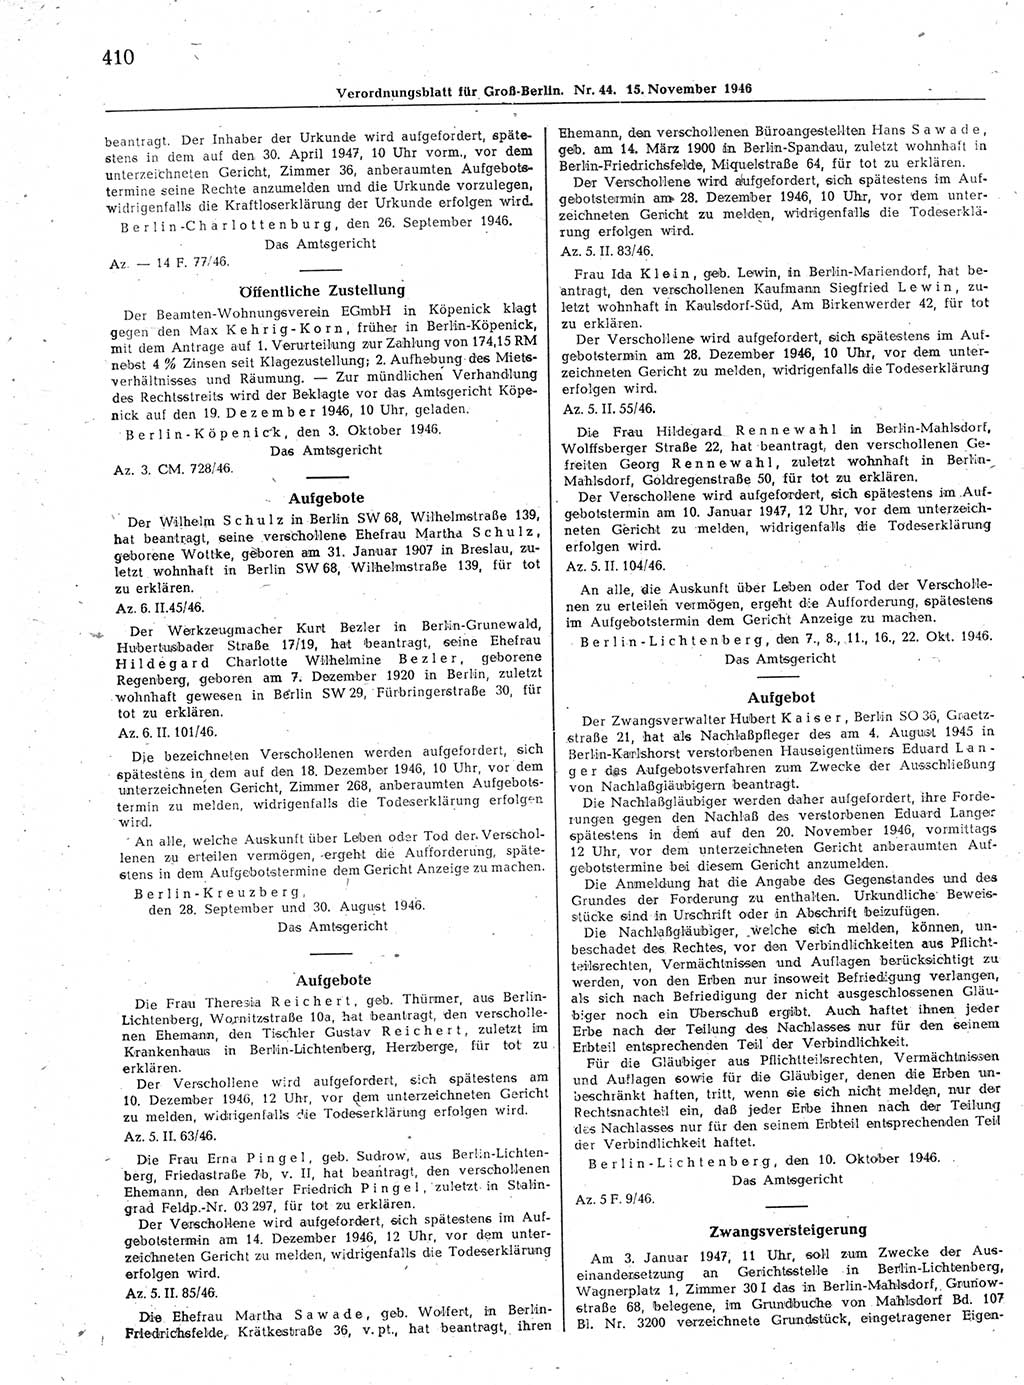 Verordnungsblatt (VOBl.) der Stadt Berlin, für Groß-Berlin 1946, Seite 410 (VOBl. Bln. 1946, S. 410)